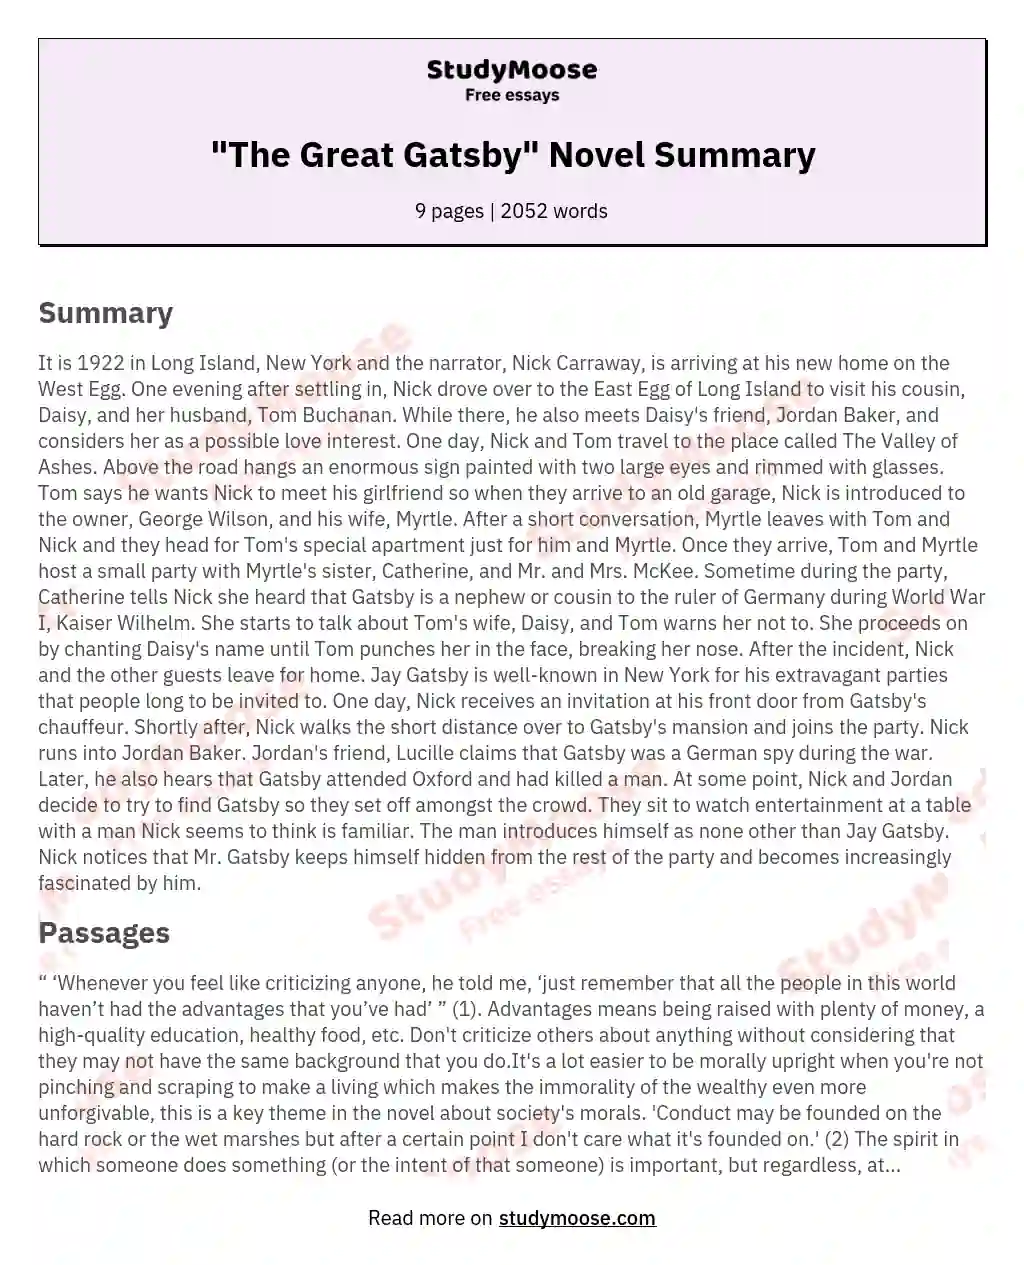 "The Great Gatsby" Novel Summary